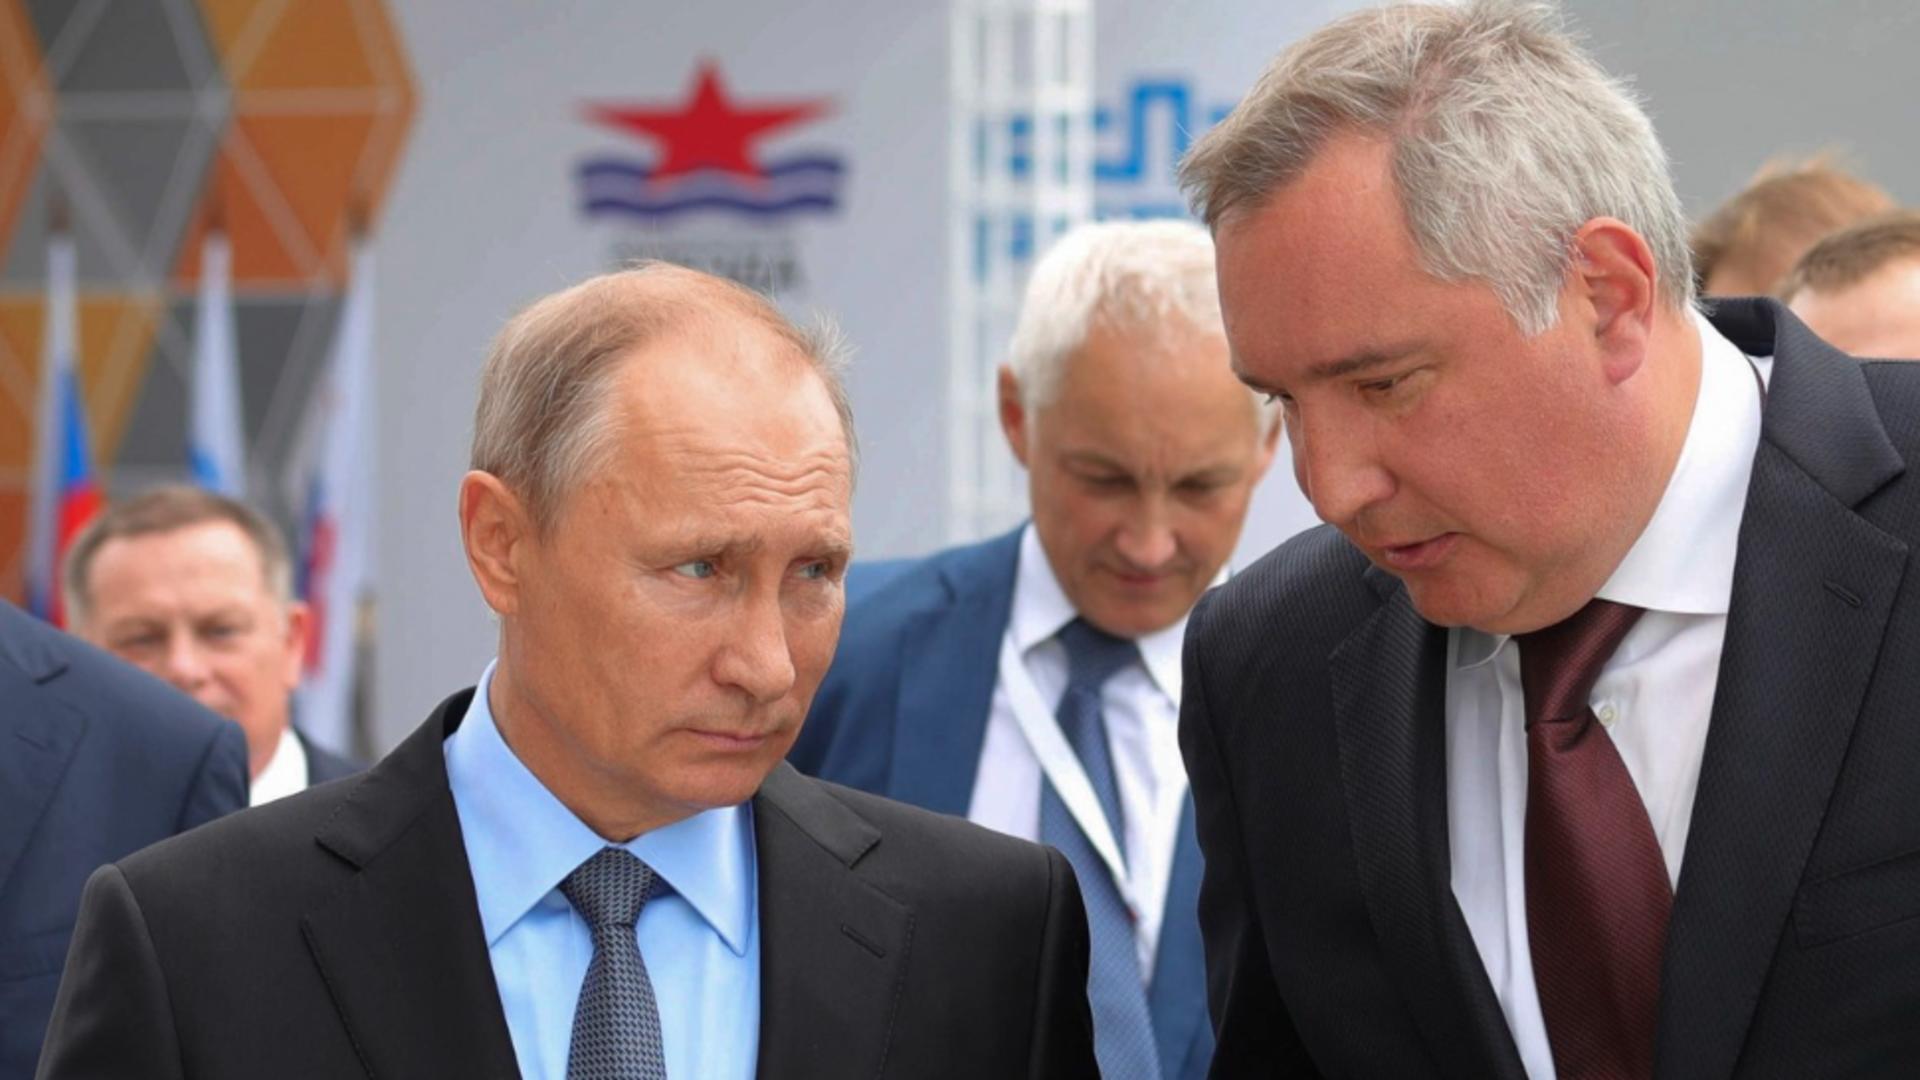 Amenințări de la Kremlin. Dmitri Rogojin, fost vicepremier rus și confidentul lui Putin, cere atacarea unui stat NATO